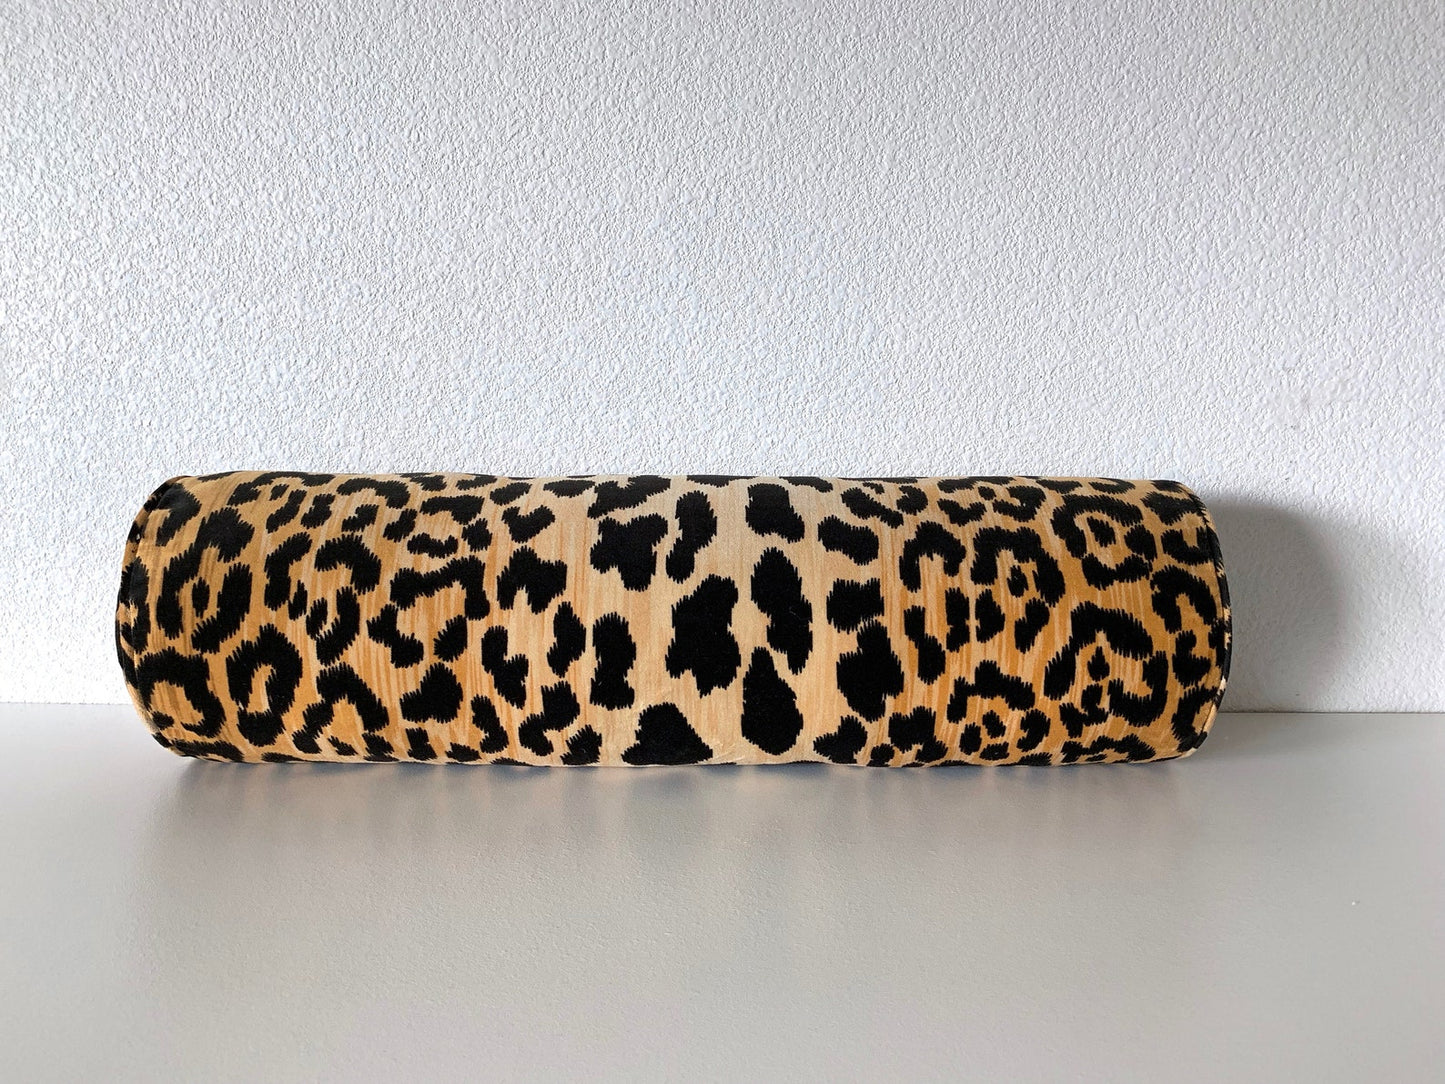 Ballard Designs Serengeti Leopard Pillow Cover - Long Lumbar Throw Bolster Pillow Cover